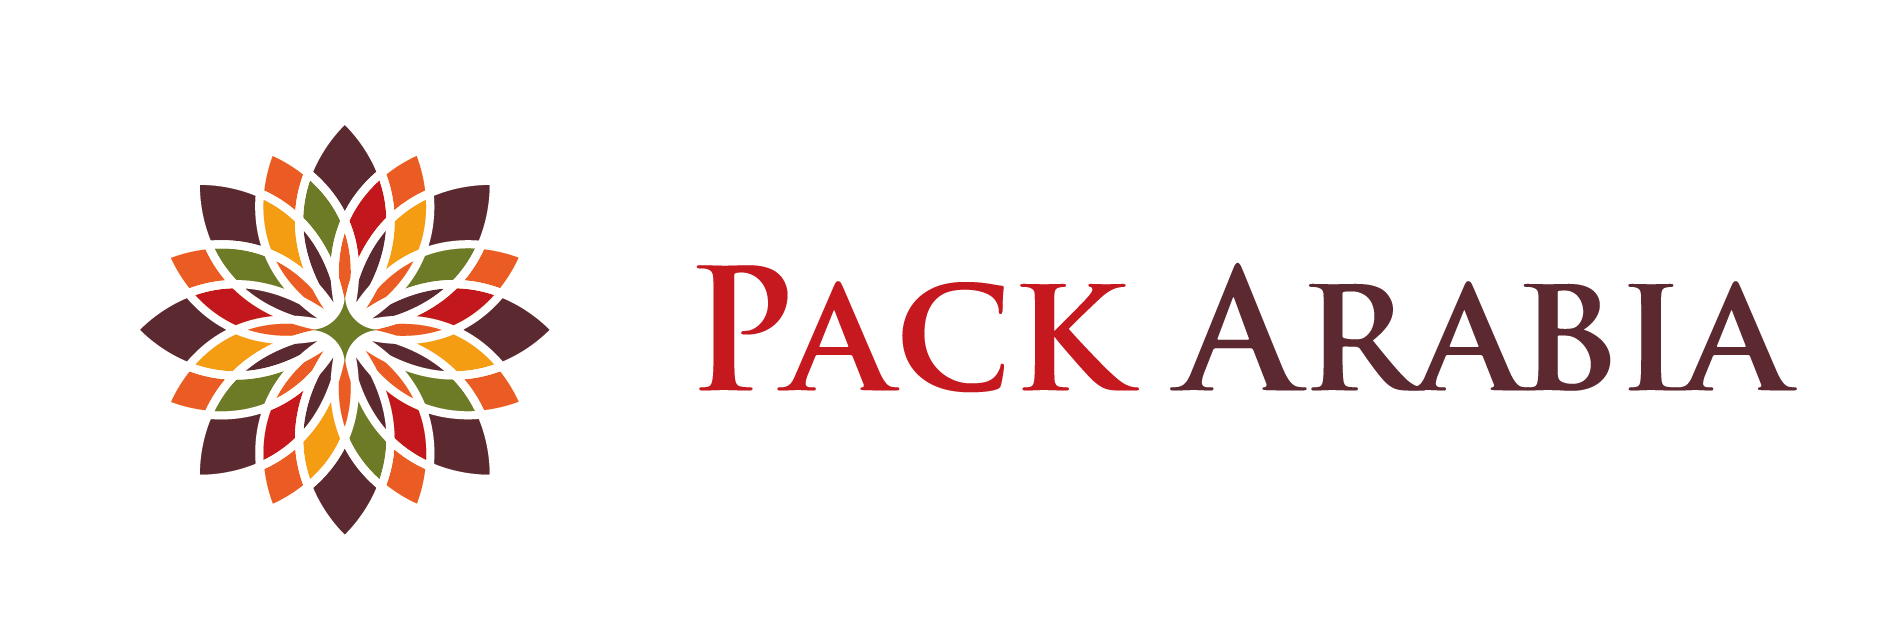 Pack Arabia